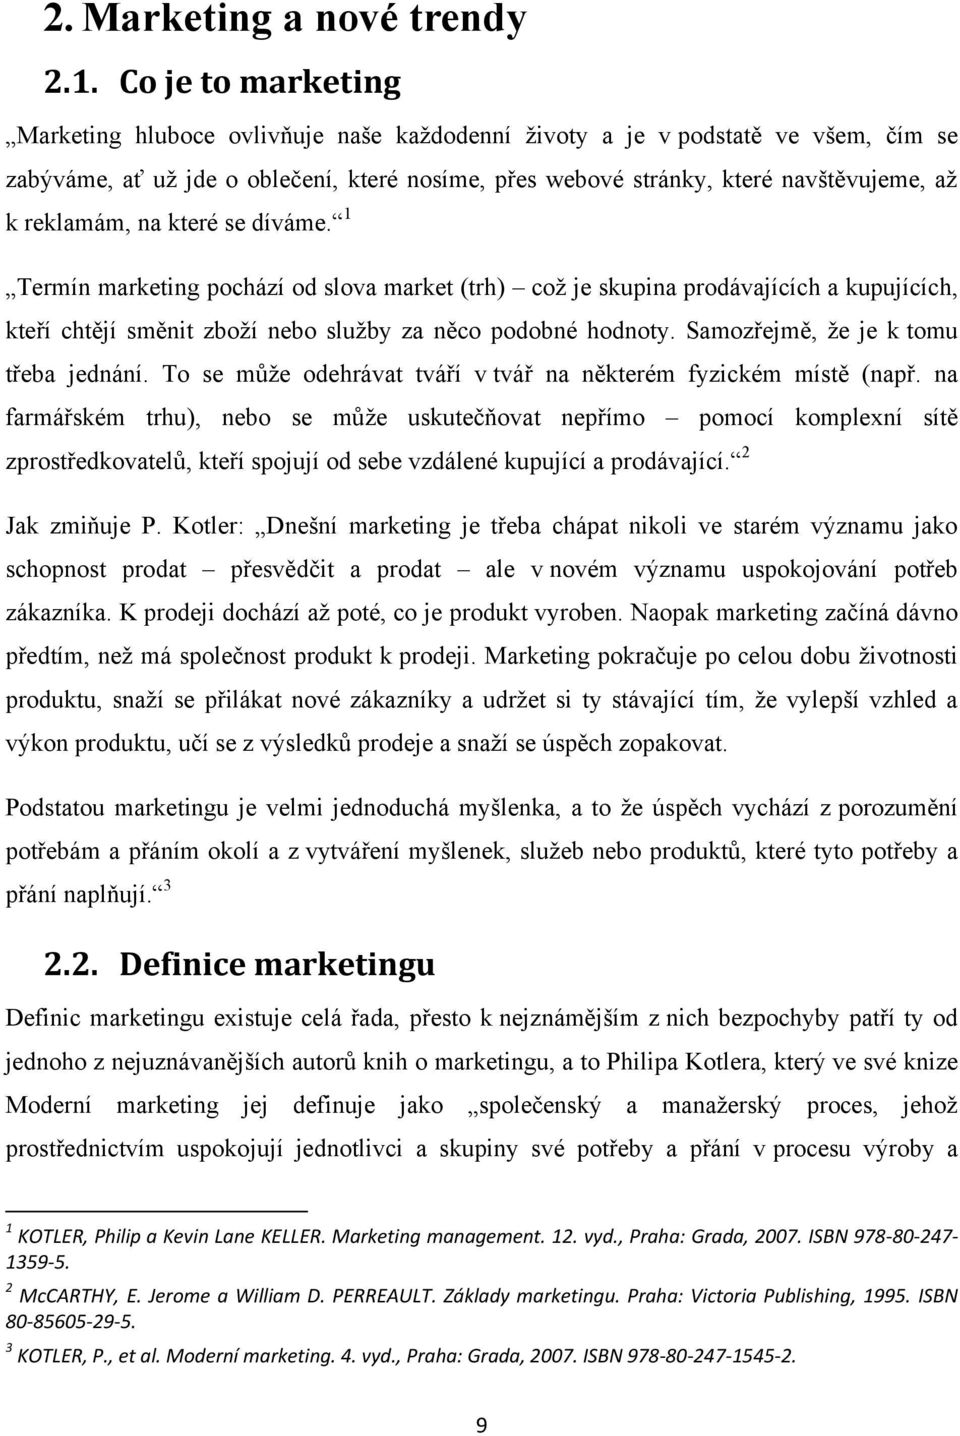 reklamám, na které se díváme. 1 Termín marketing pochází od slova market (trh) coţ je skupina prodávajících a kupujících, kteří chtějí směnit zboţí nebo sluţby za něco podobné hodnoty.